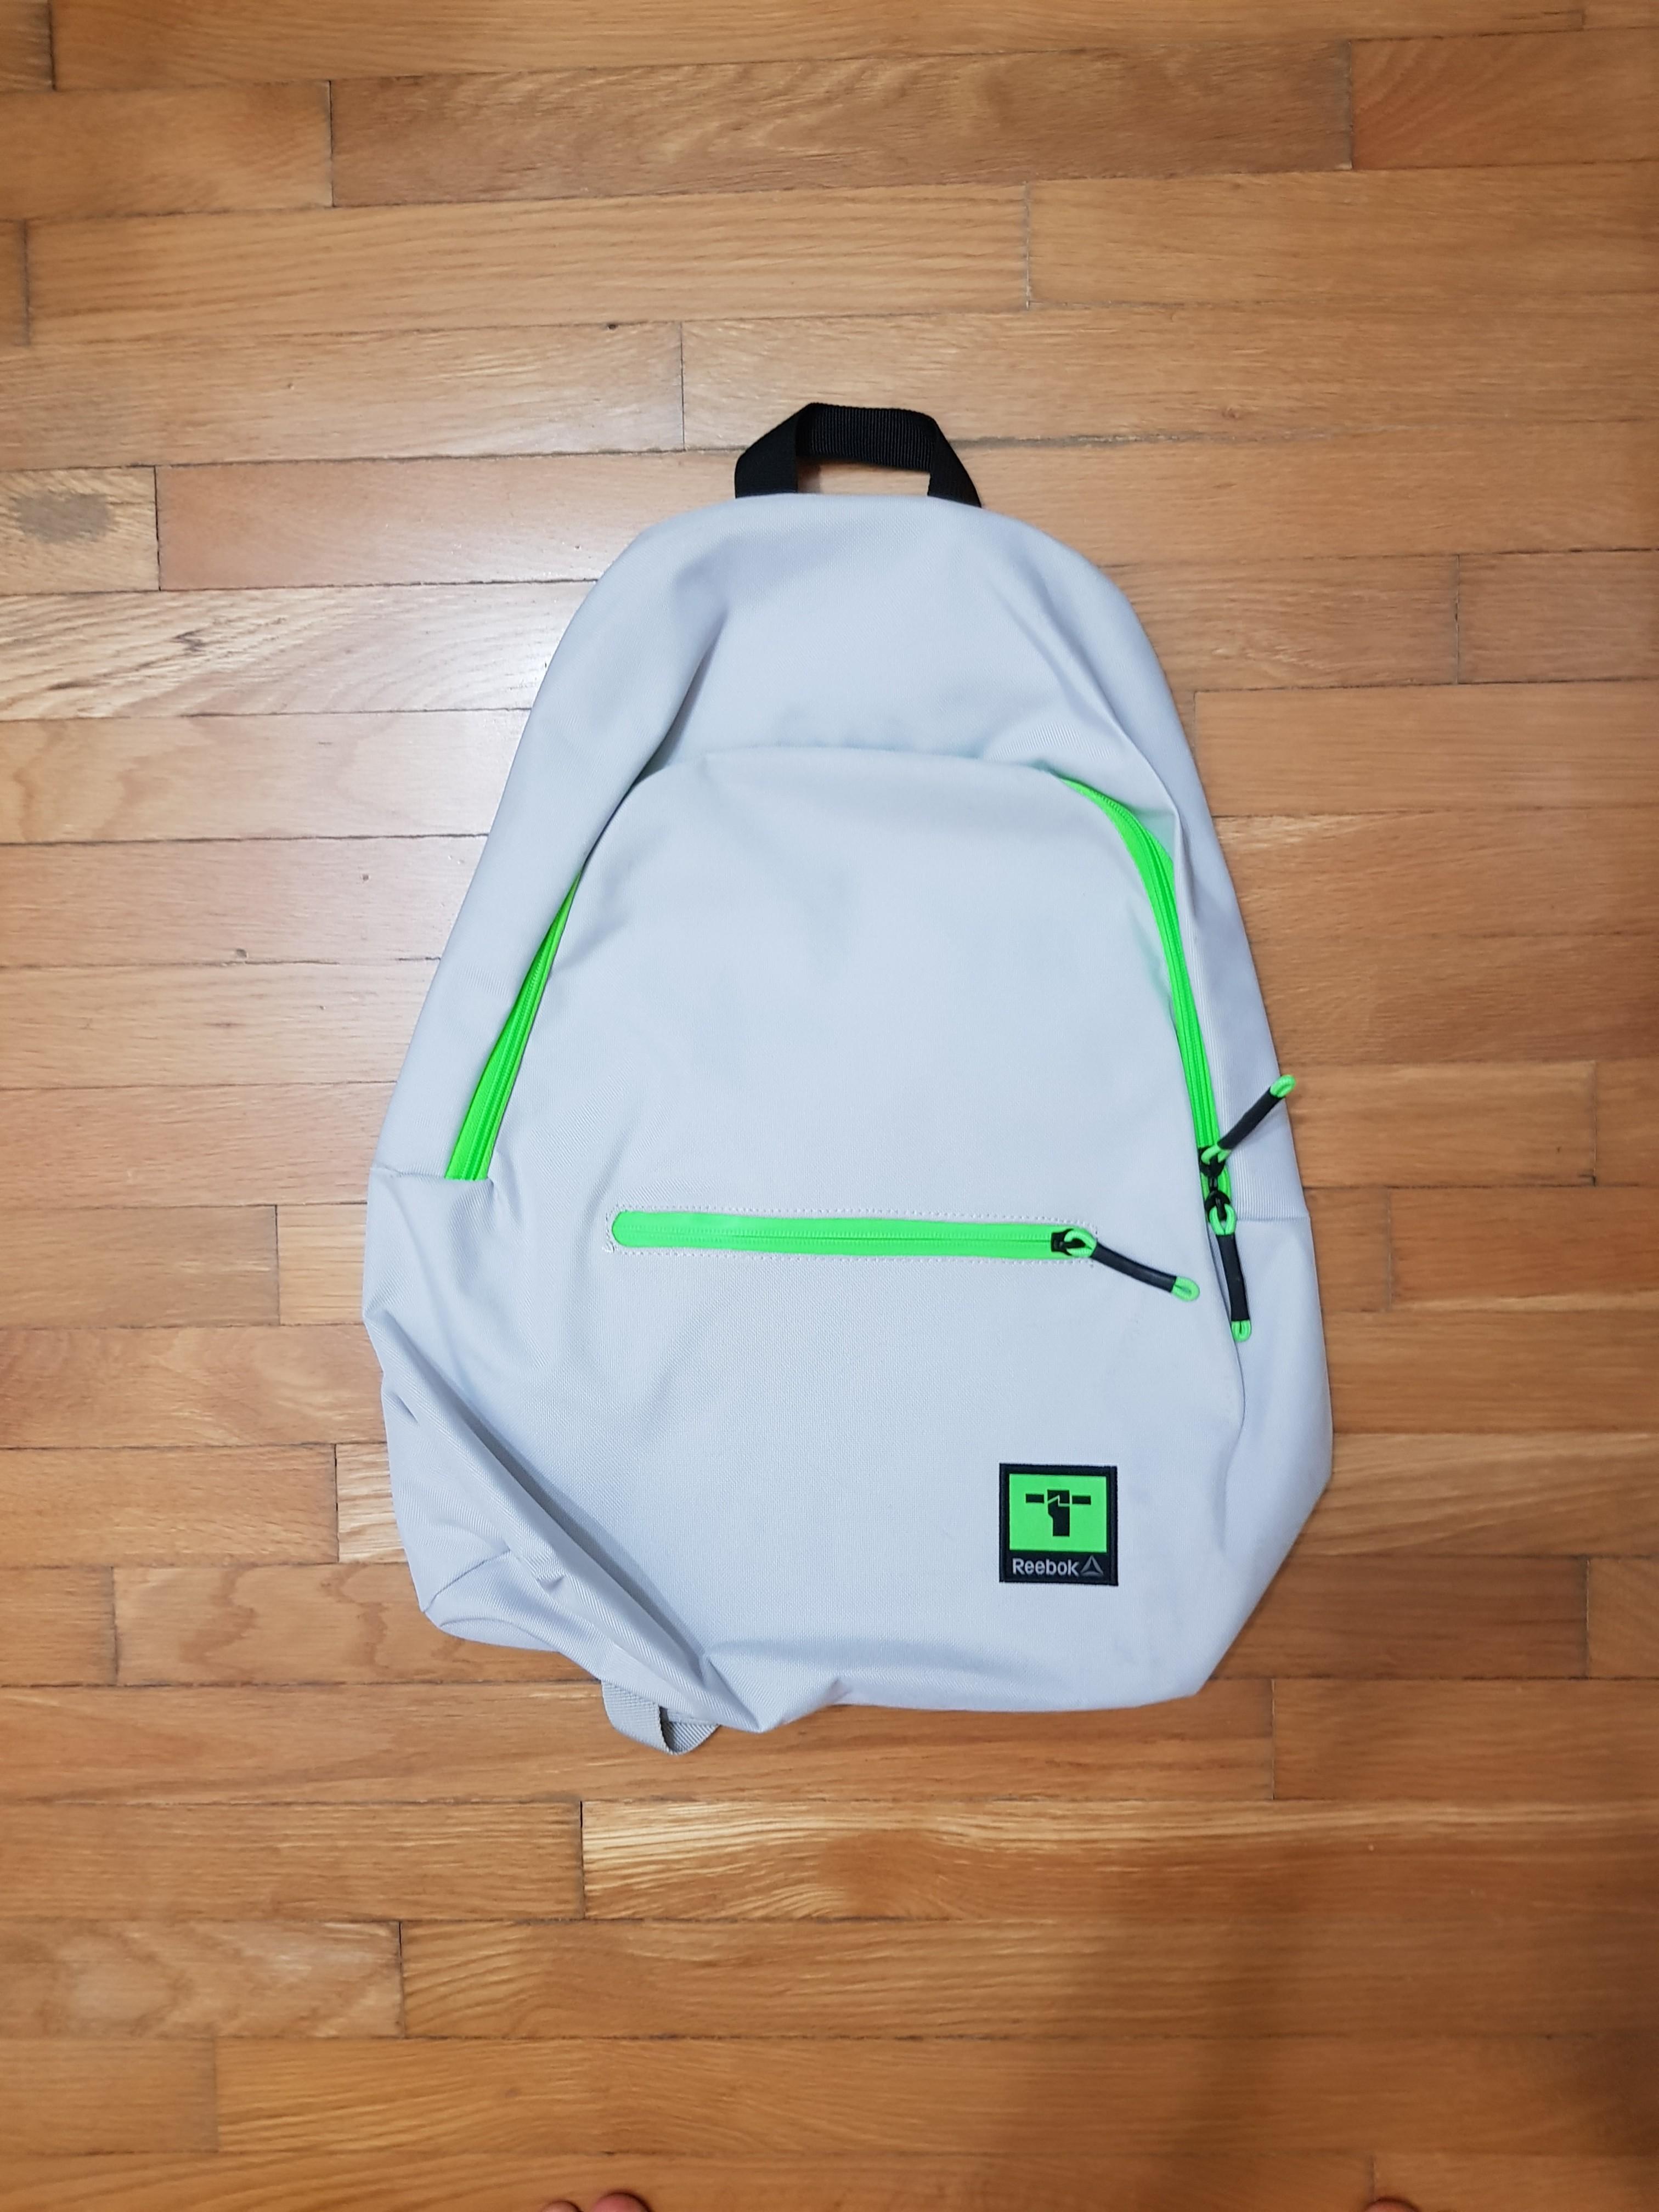 reebok grey backpack